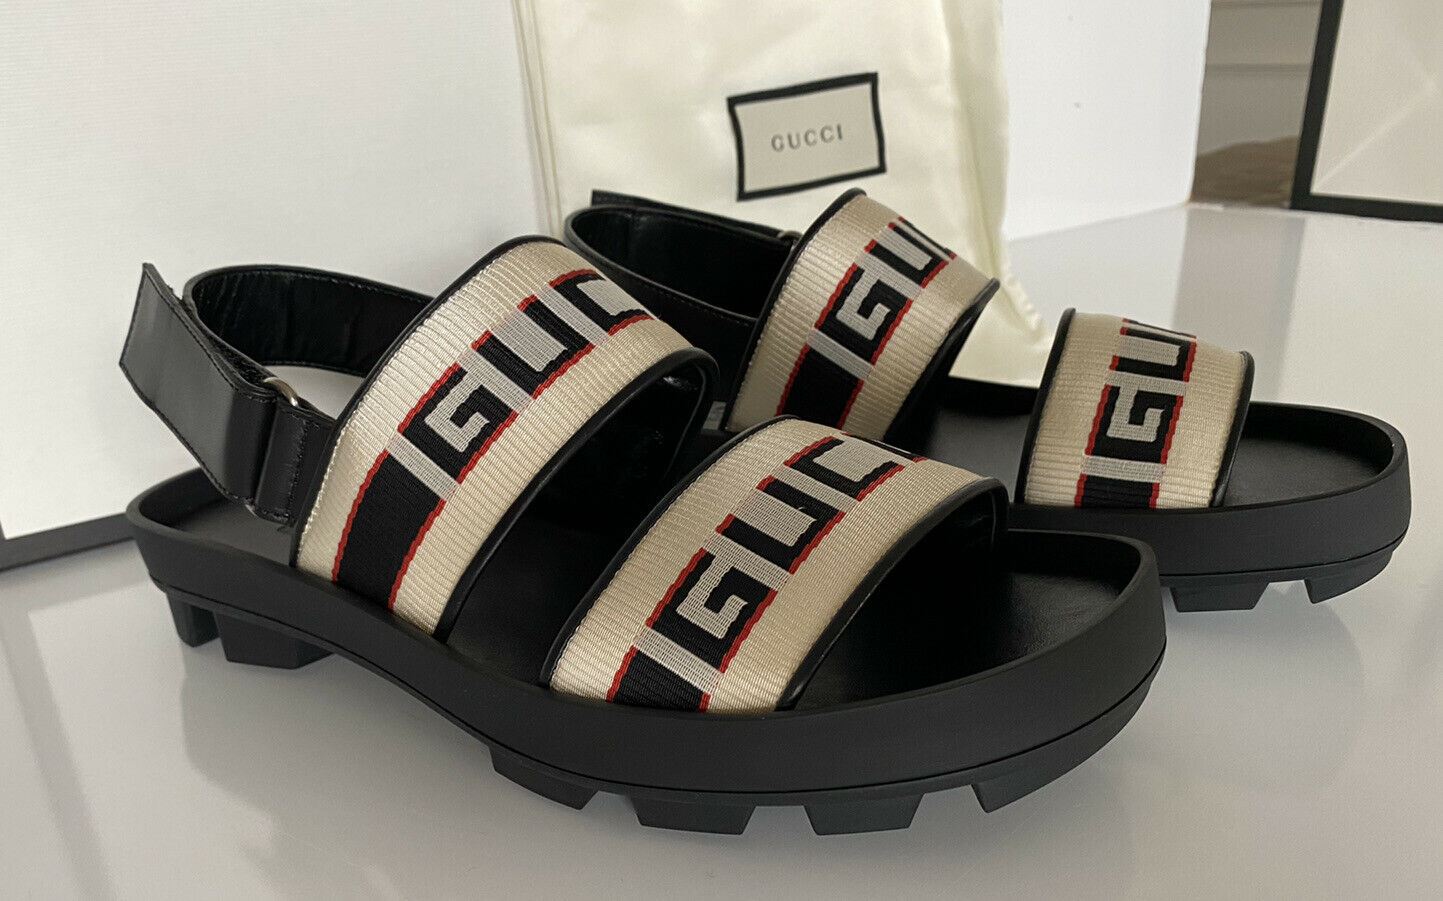 NIB Gucci Мужские черные/белые сандалии из парусины/кожи 10 США (Gucci 9.5), Италия 523769 